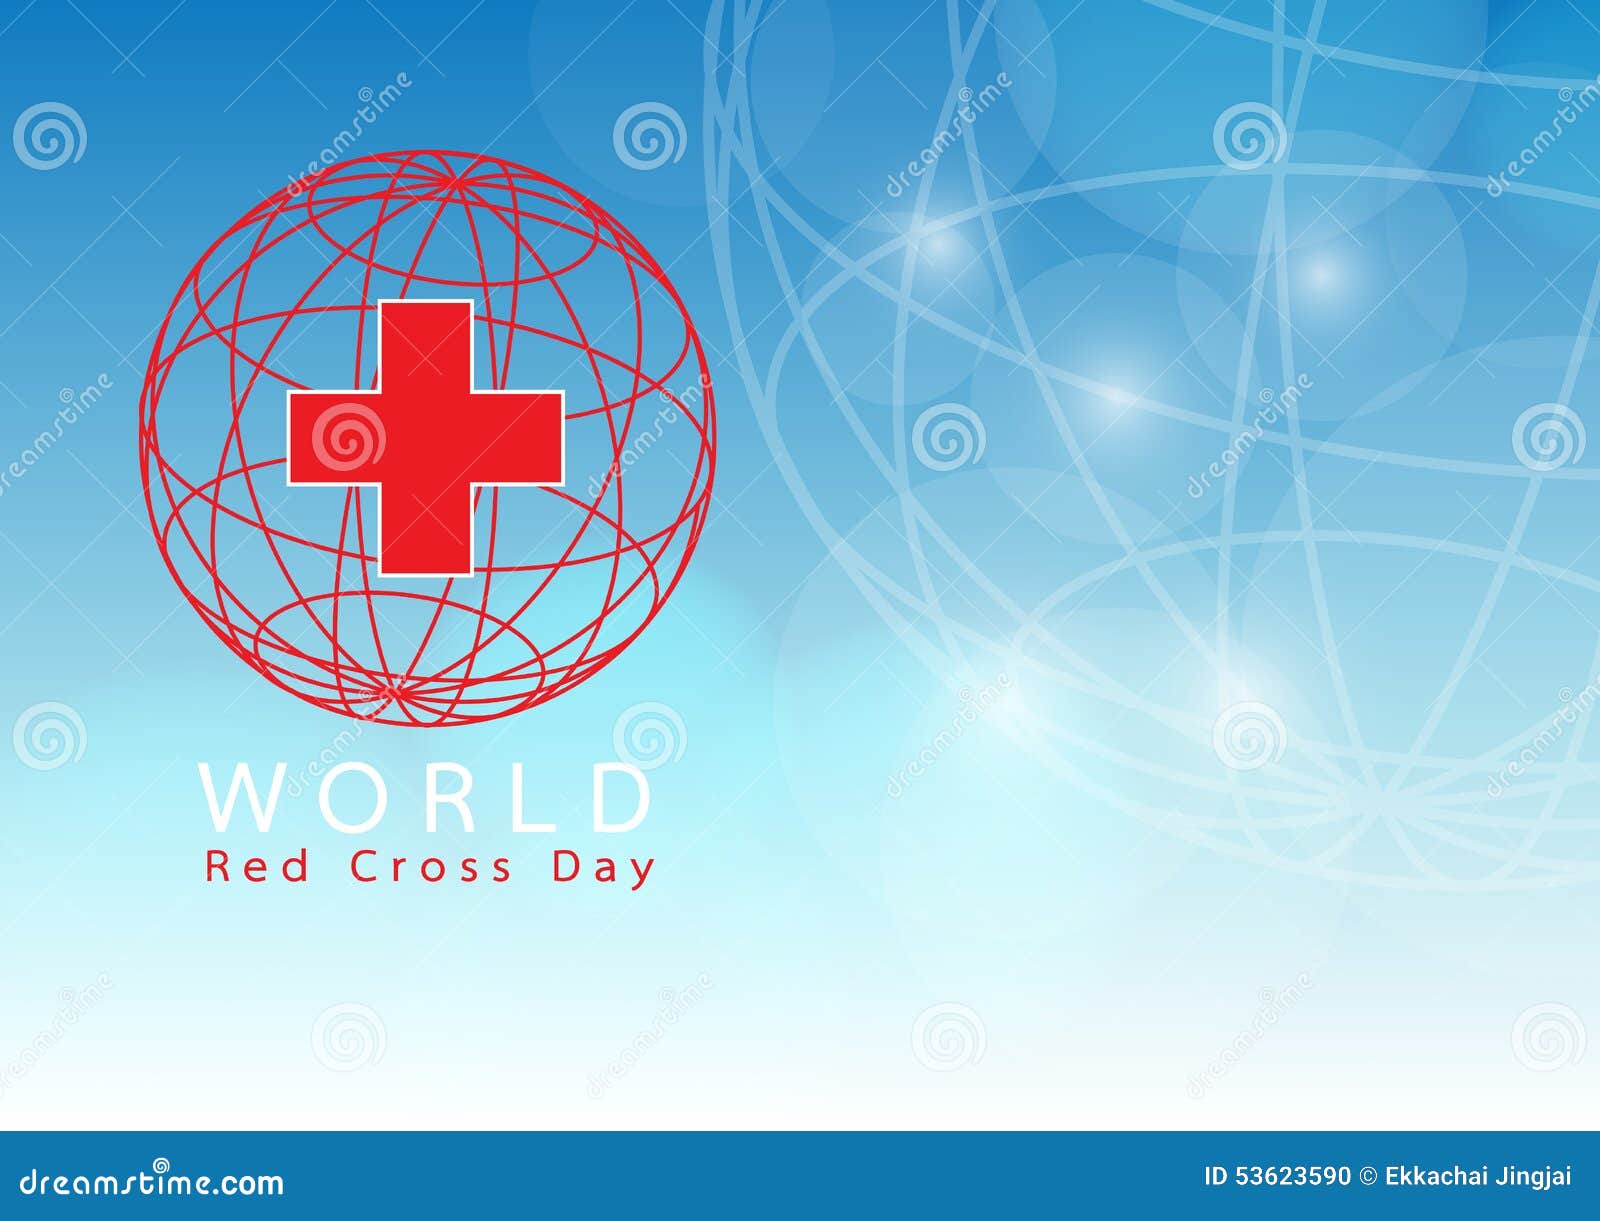 World Red Cross Day: Ngày Thế giới của Rồng đỏ bắt đầu từ người tình nguyện cứu trợ người khác. Hãy xem các hình ảnh liên quan để cảm nhận sứ mạng đầy ý nghĩa và giá trị của Rồng Đỏ.